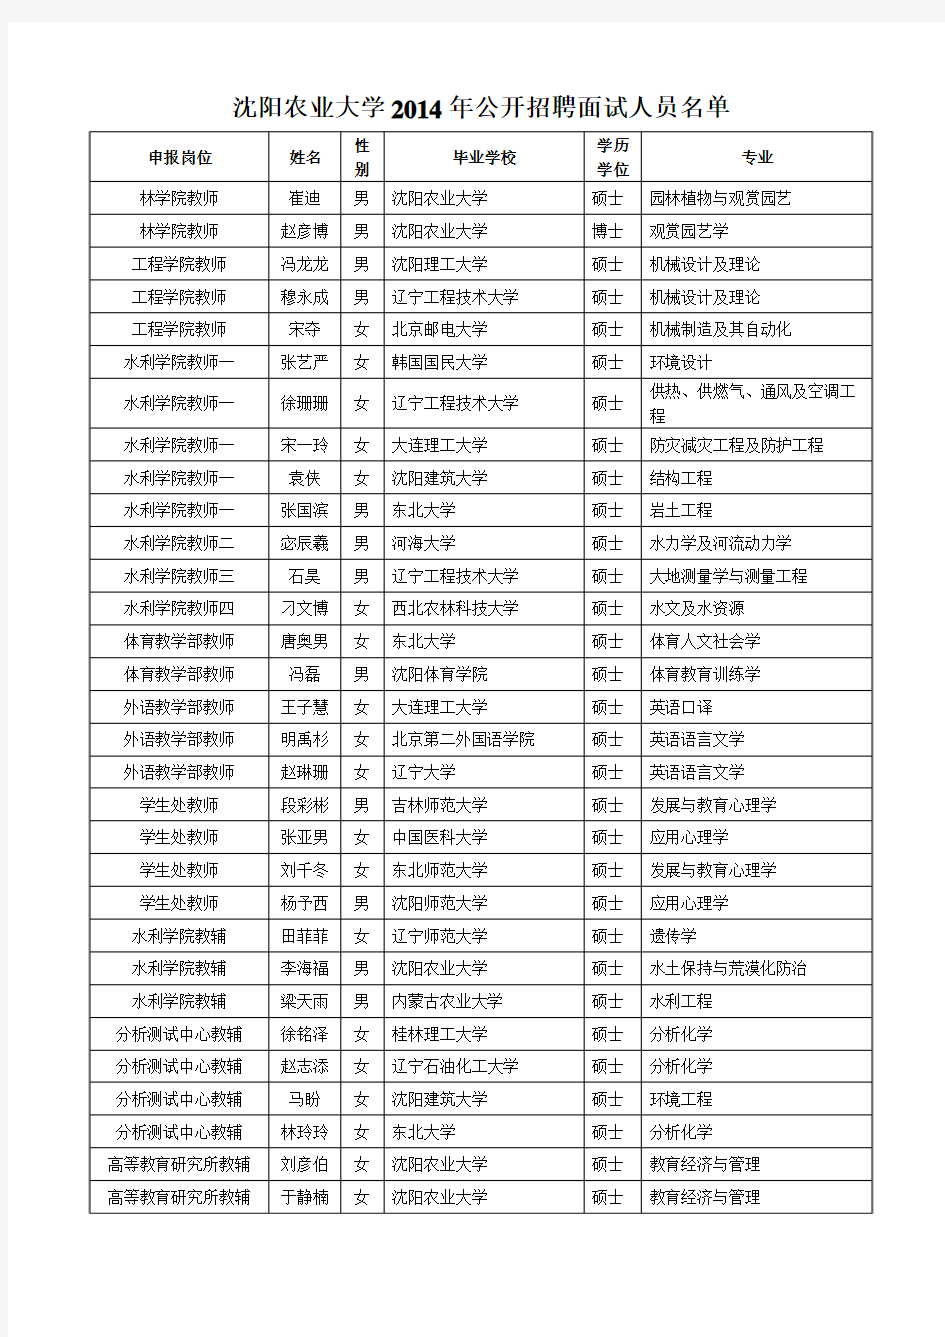 沈阳农业大学2014年公开招聘面试人员名单